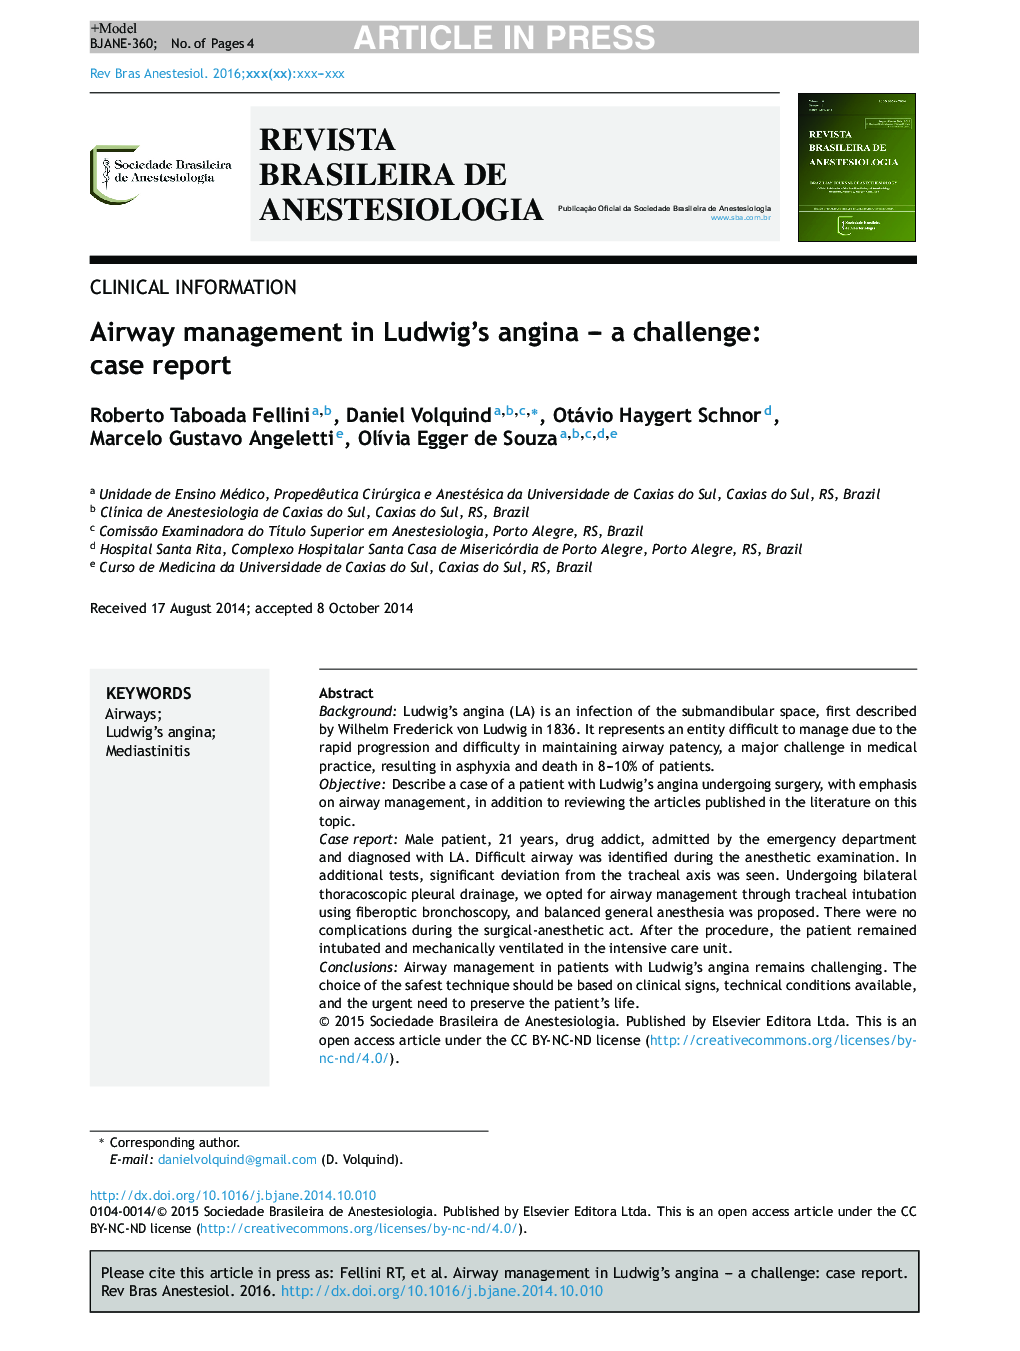 مدیریت راه هوایی در آنژین لودویگ - یک چالش: گزارش مورد 